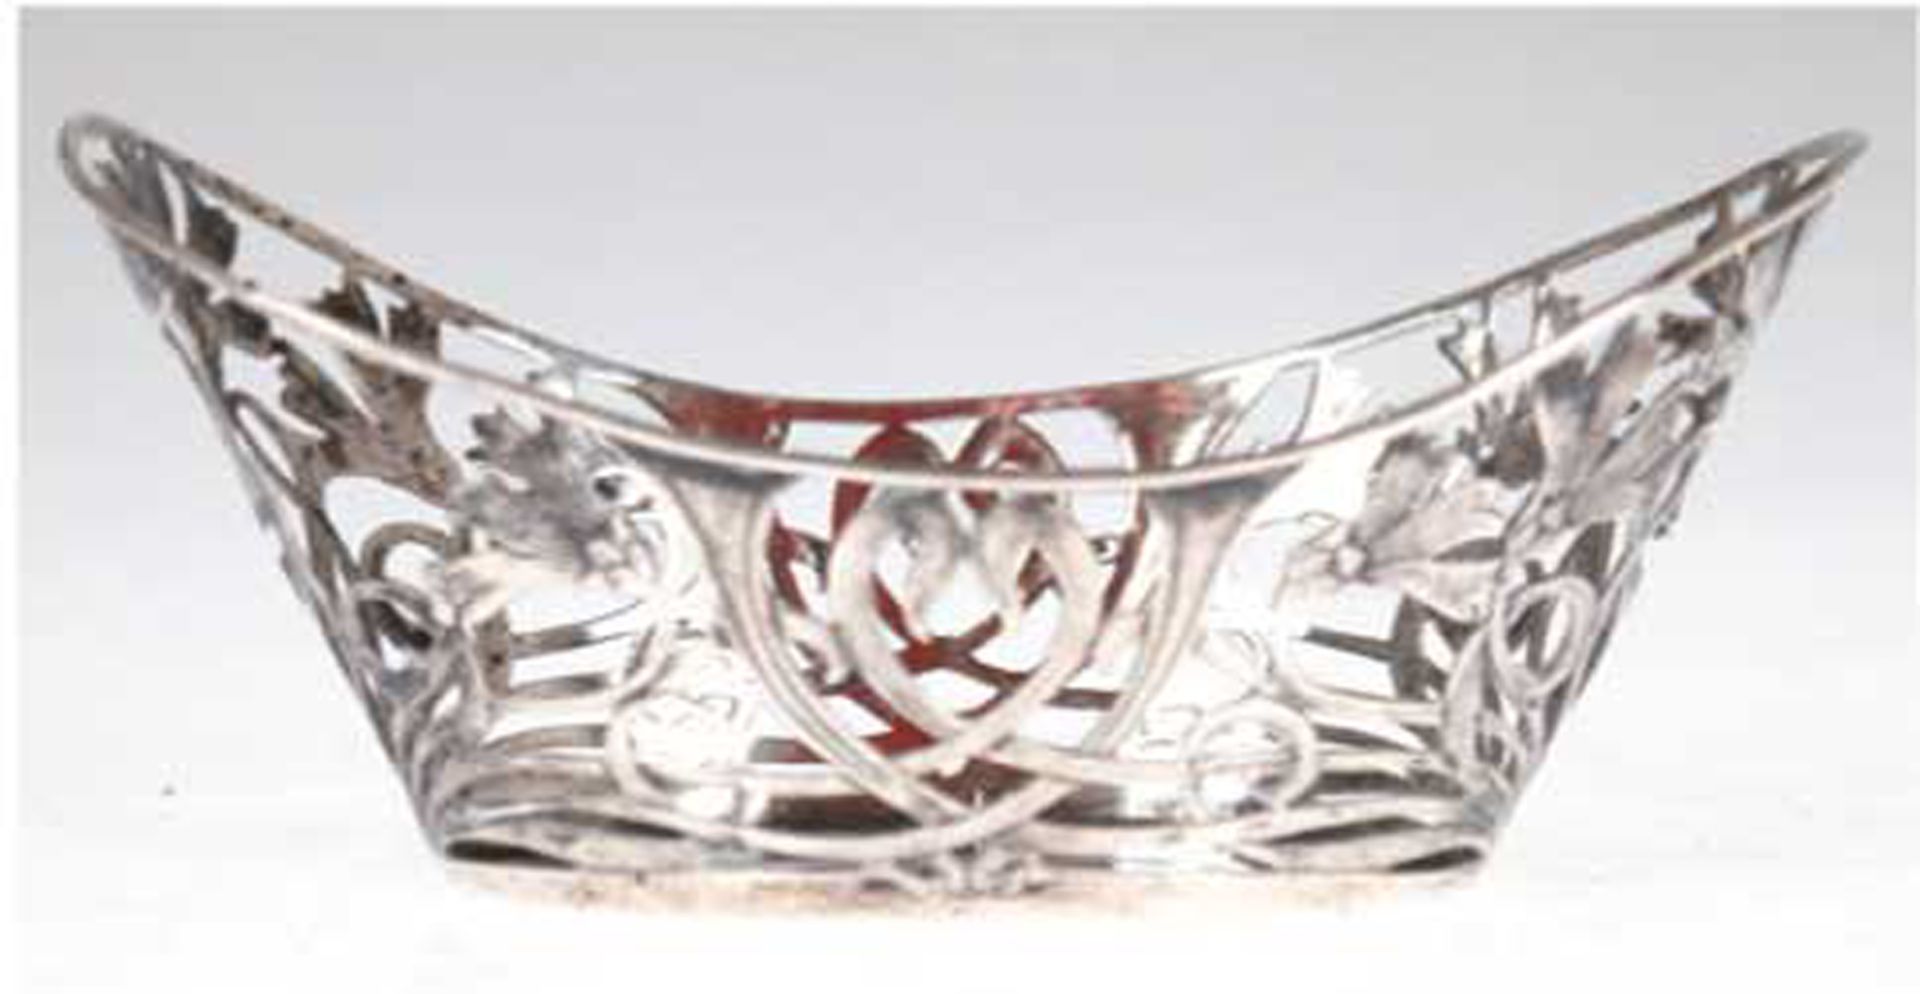 Körbchen, 800er Silber, punziert, 47 g, ovale Form mit floral durchbrochener Wandung, beschädigt, 5